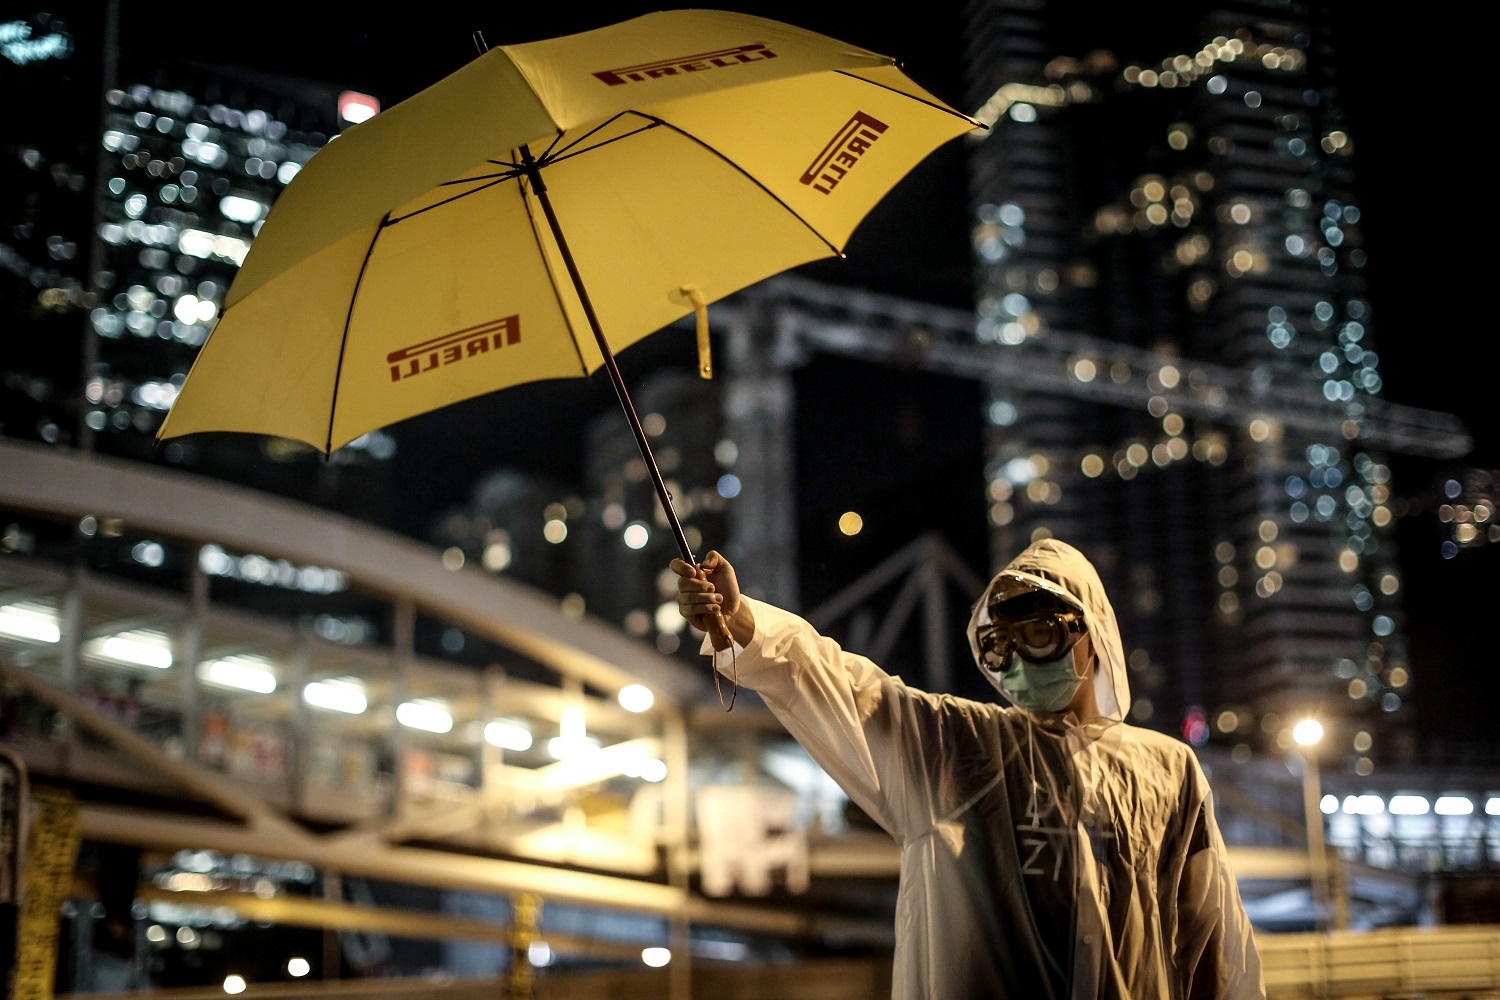 People 1500x1000 umbrella Hong Kong Umbrella Movement yellow protestors skyscraper overalls mask glasses bokeh street night lights